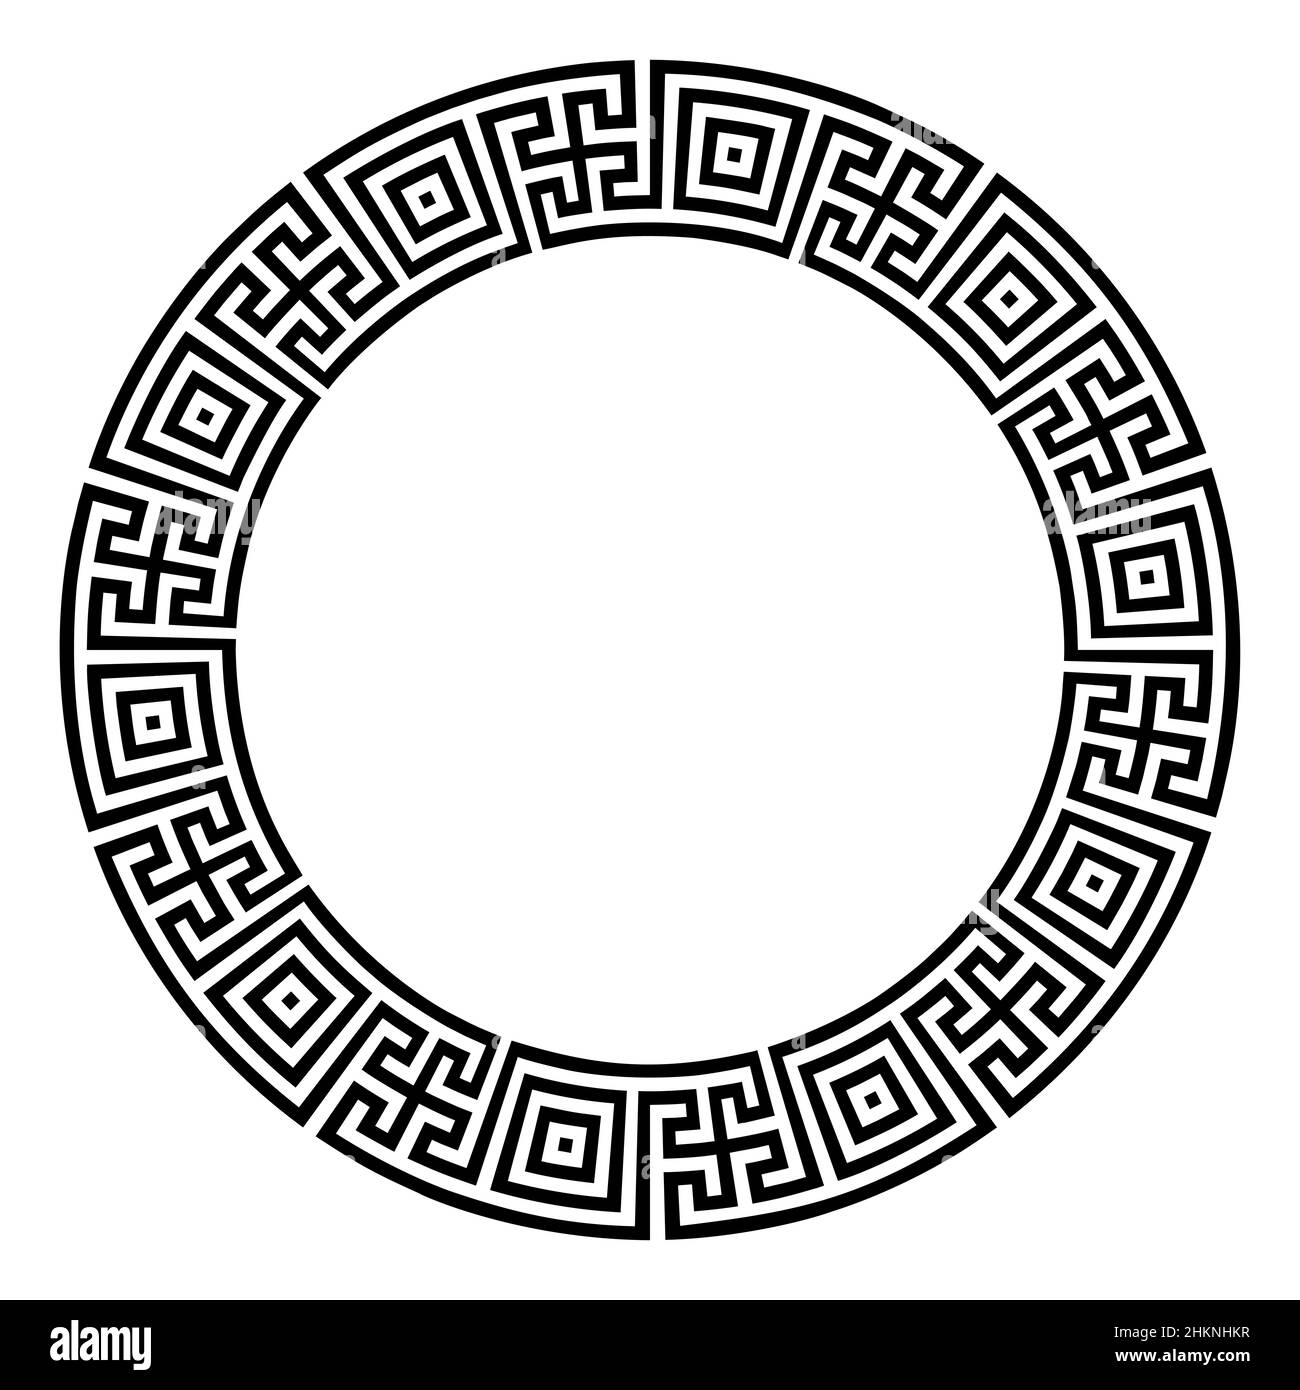 Doppeltes Mäander-Muster, bestehend aus Quadraten und Kreuzen, einem Kreisrahmen und einem dekorativen runden Rand, mit Linien, geformt zu einem wiederholten Motiv. Stockfoto